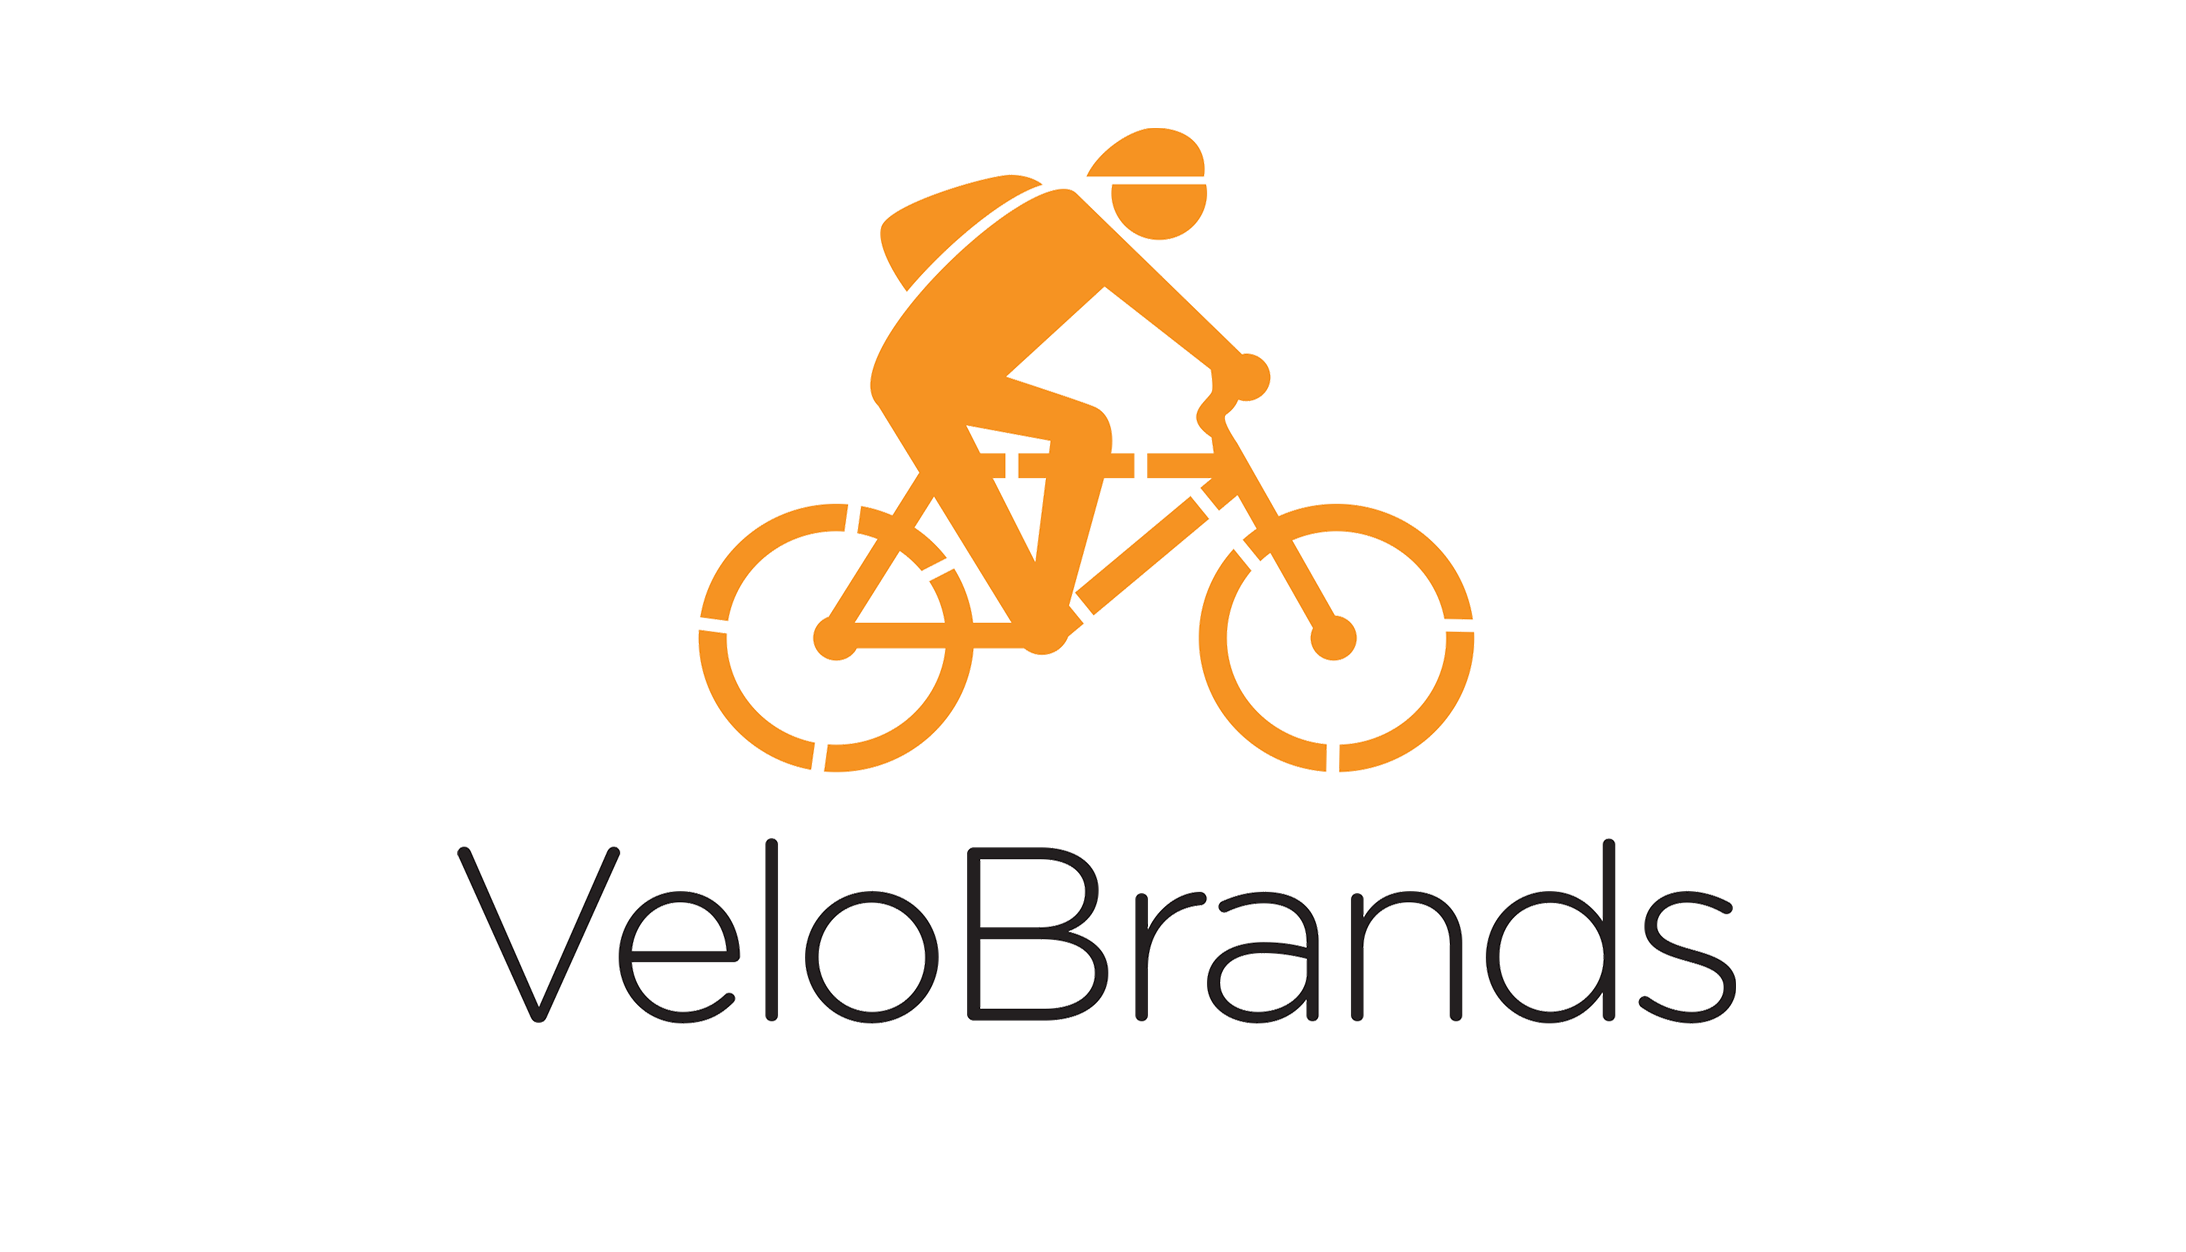 VeloBrands Ltd